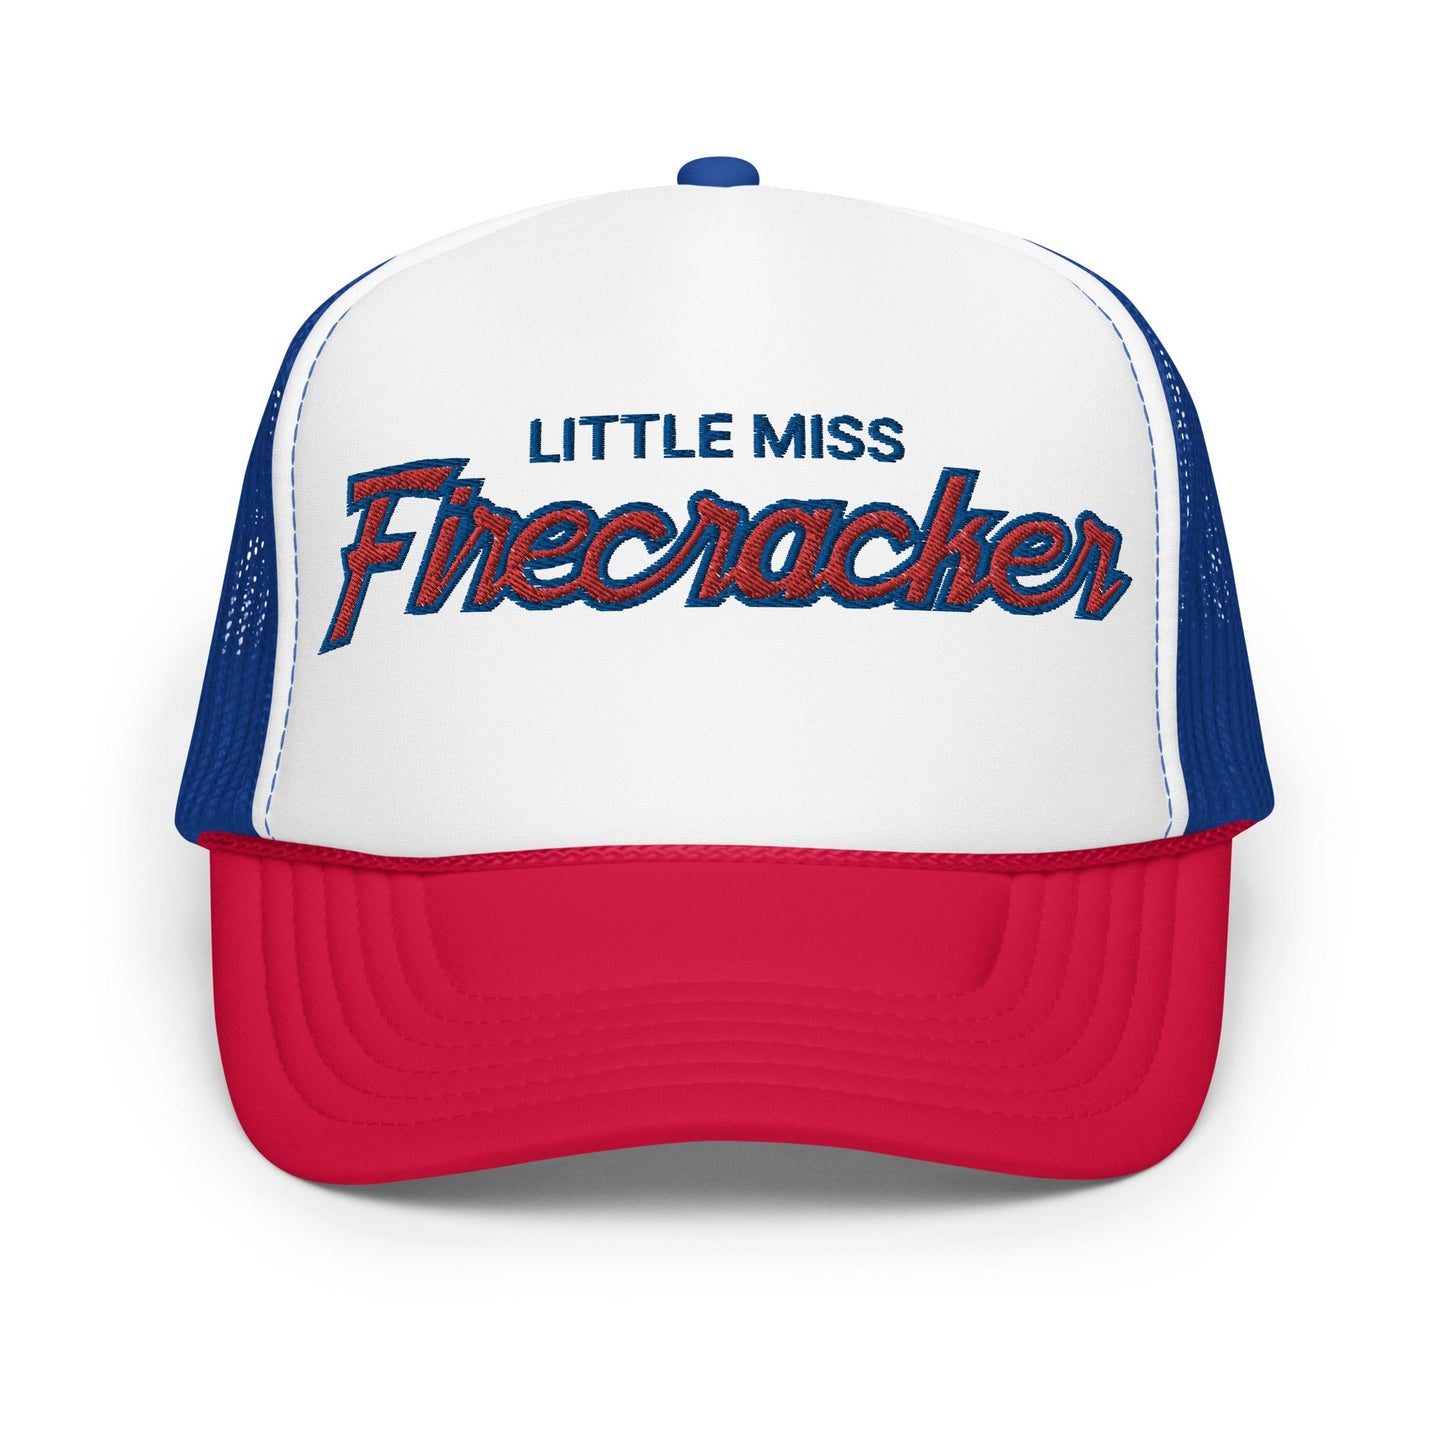 Little Miss Firecracker 4th of July Funny Foam Trucker Hat Red White Blue